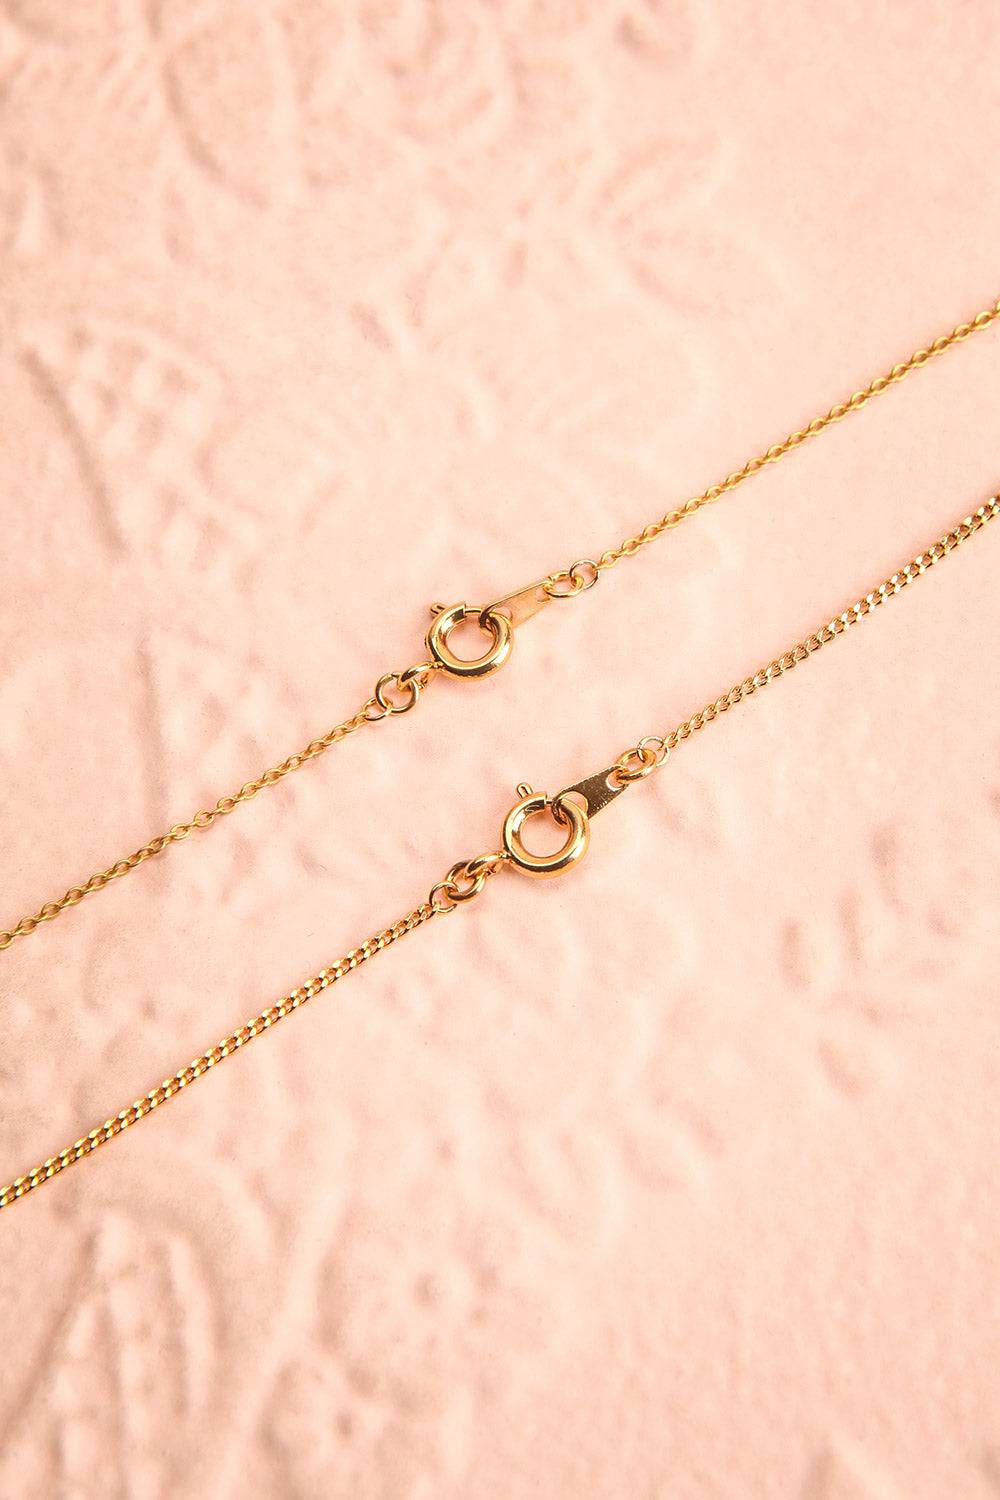 Valentina Terechkova Gold Pendant Necklace | Boutique 1861 closure